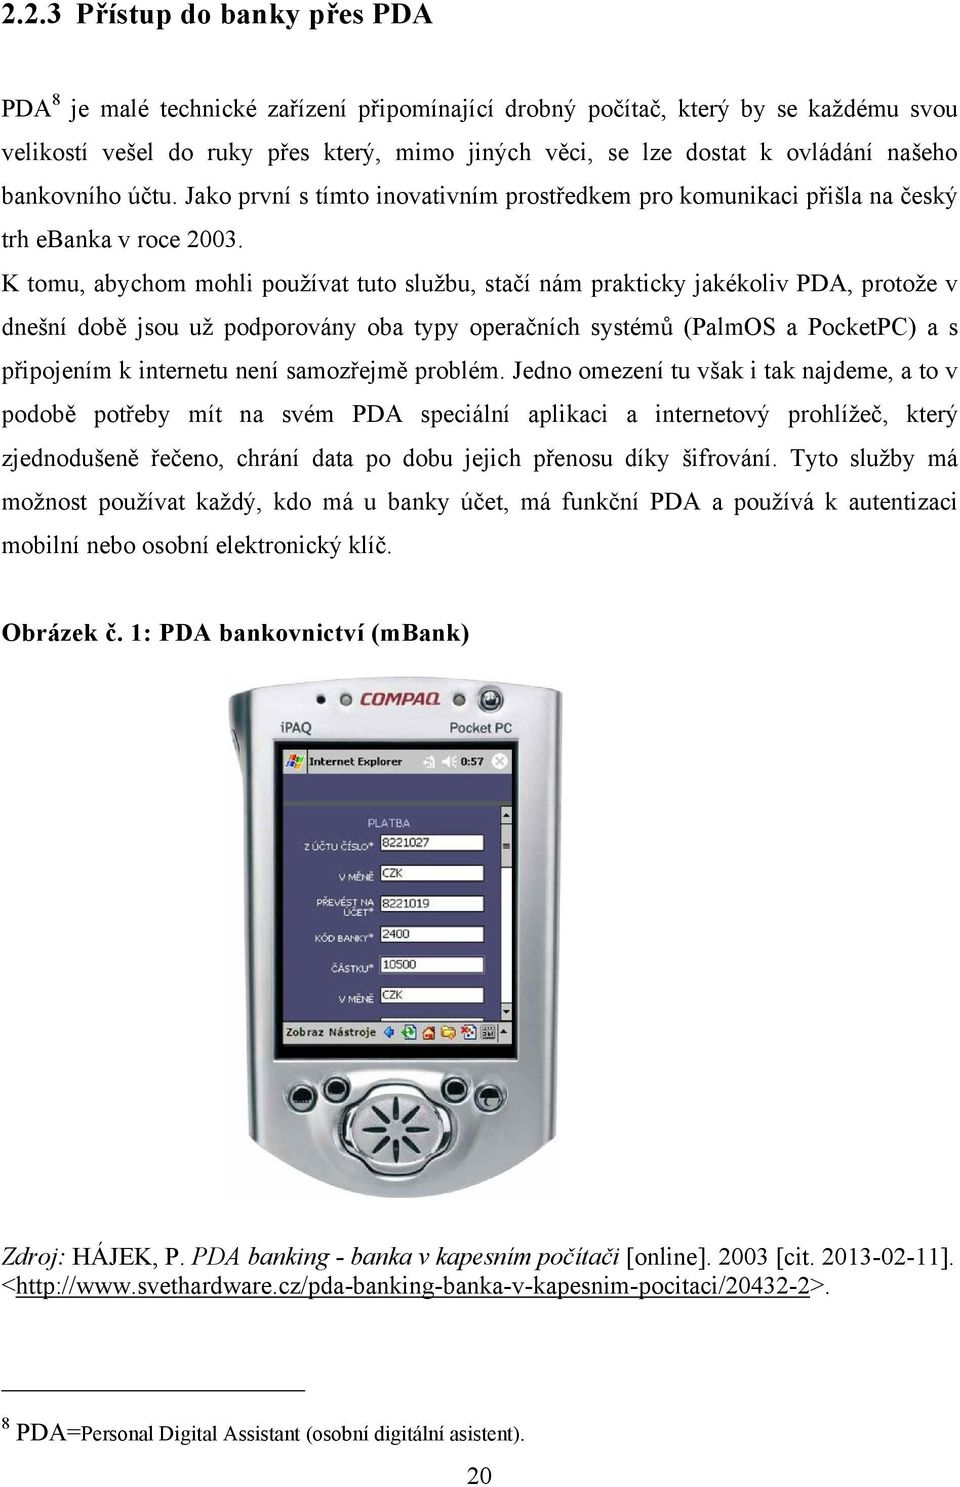 K tomu, abychom mohli pouţívat tuto sluţbu, stačí nám prakticky jakékoliv PDA, protoţe v dnešní době jsou uţ podporovány oba typy operačních systémů (PalmOS a PocketPC) a s připojením k internetu